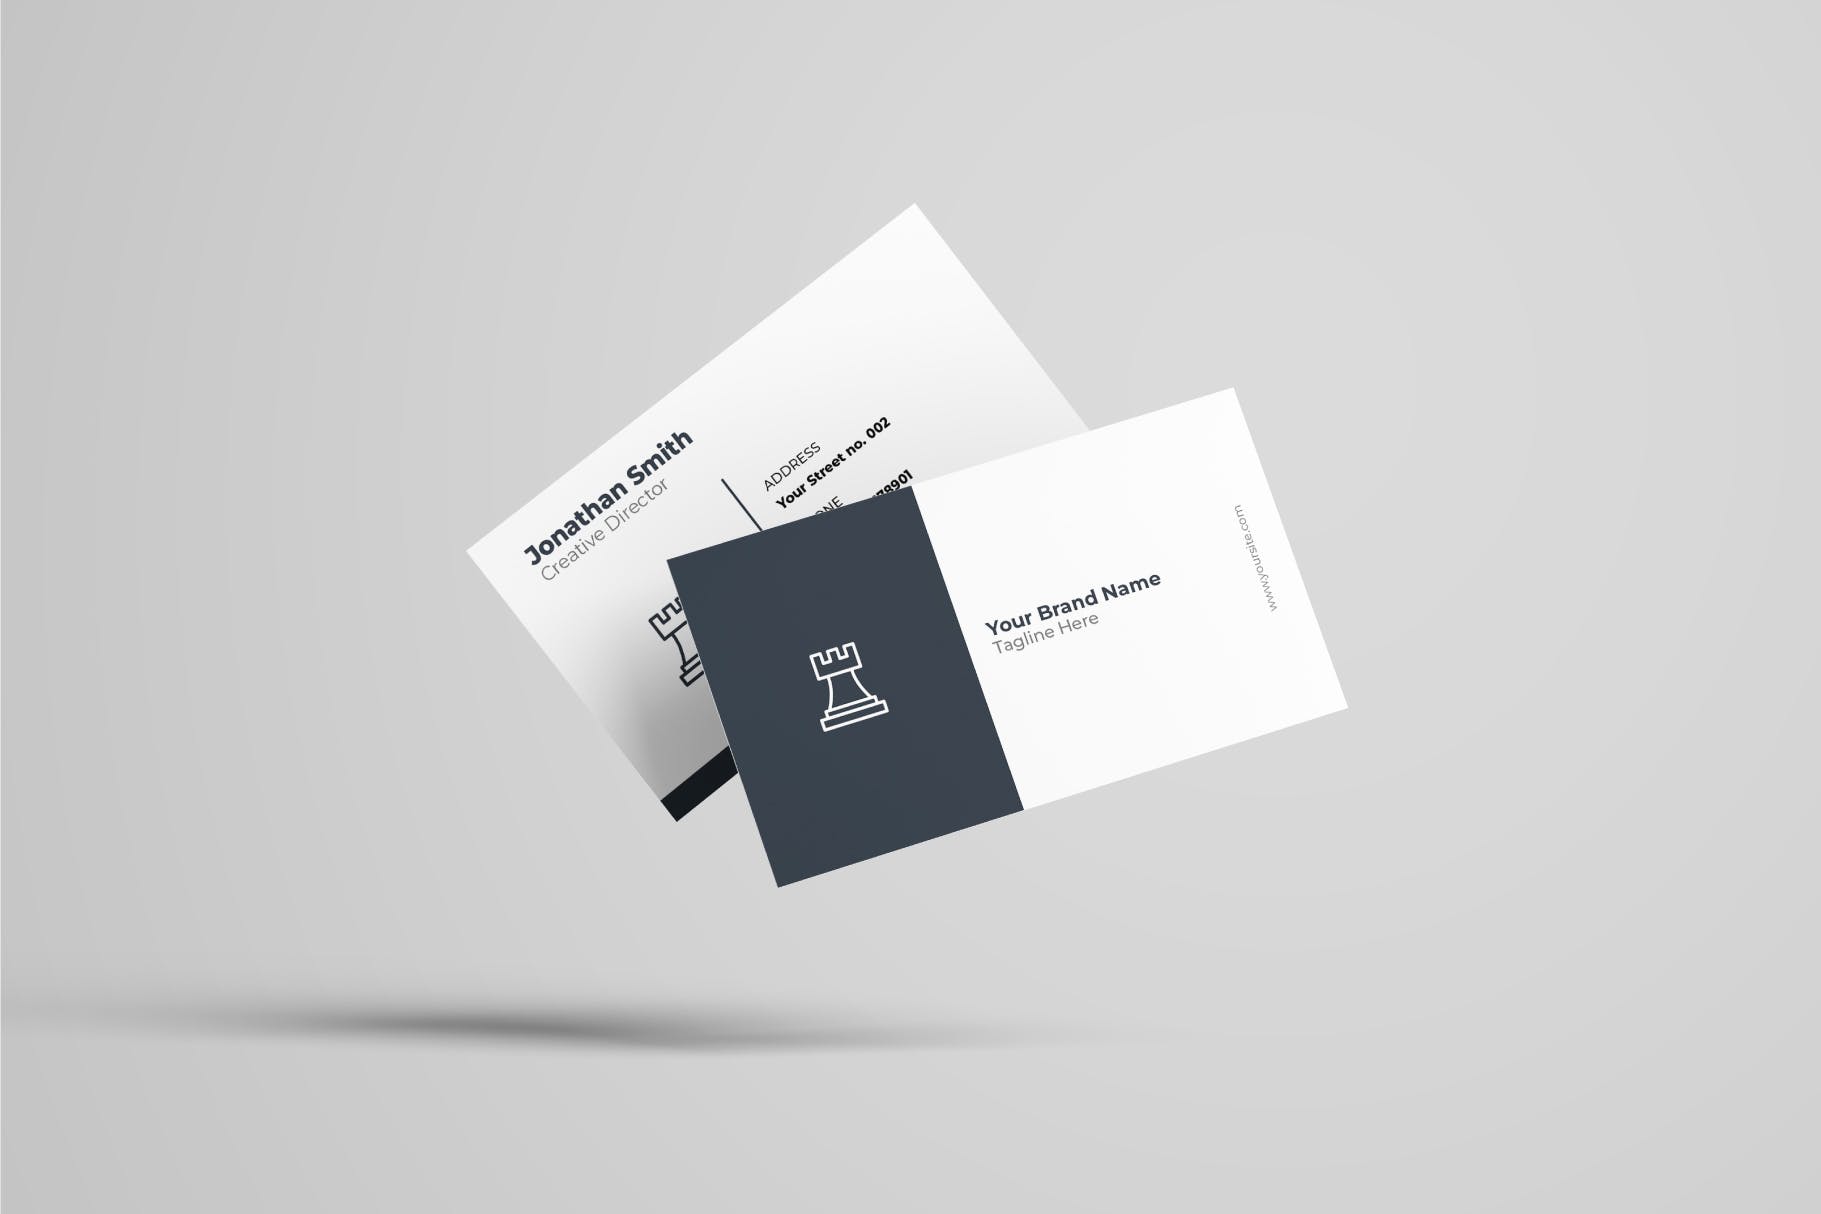 创意设计公司企业蚂蚁素材精选名片模板v41 Business Card Template.v41插图(1)